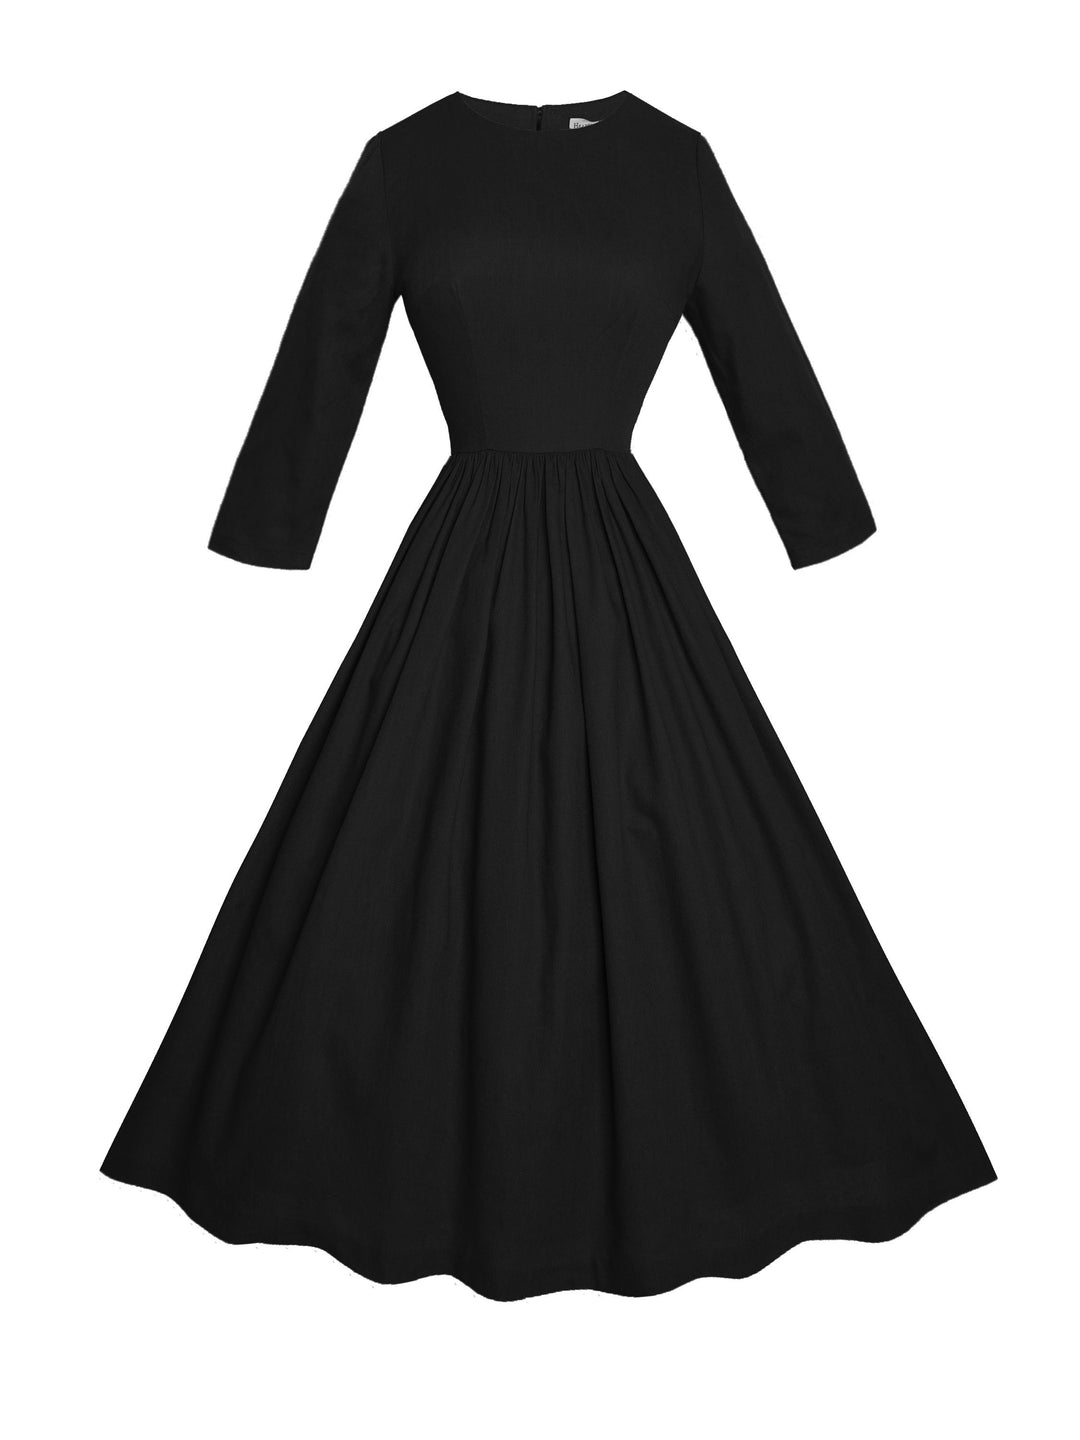 MTO - Marianne Dress in Midnight Black Linen